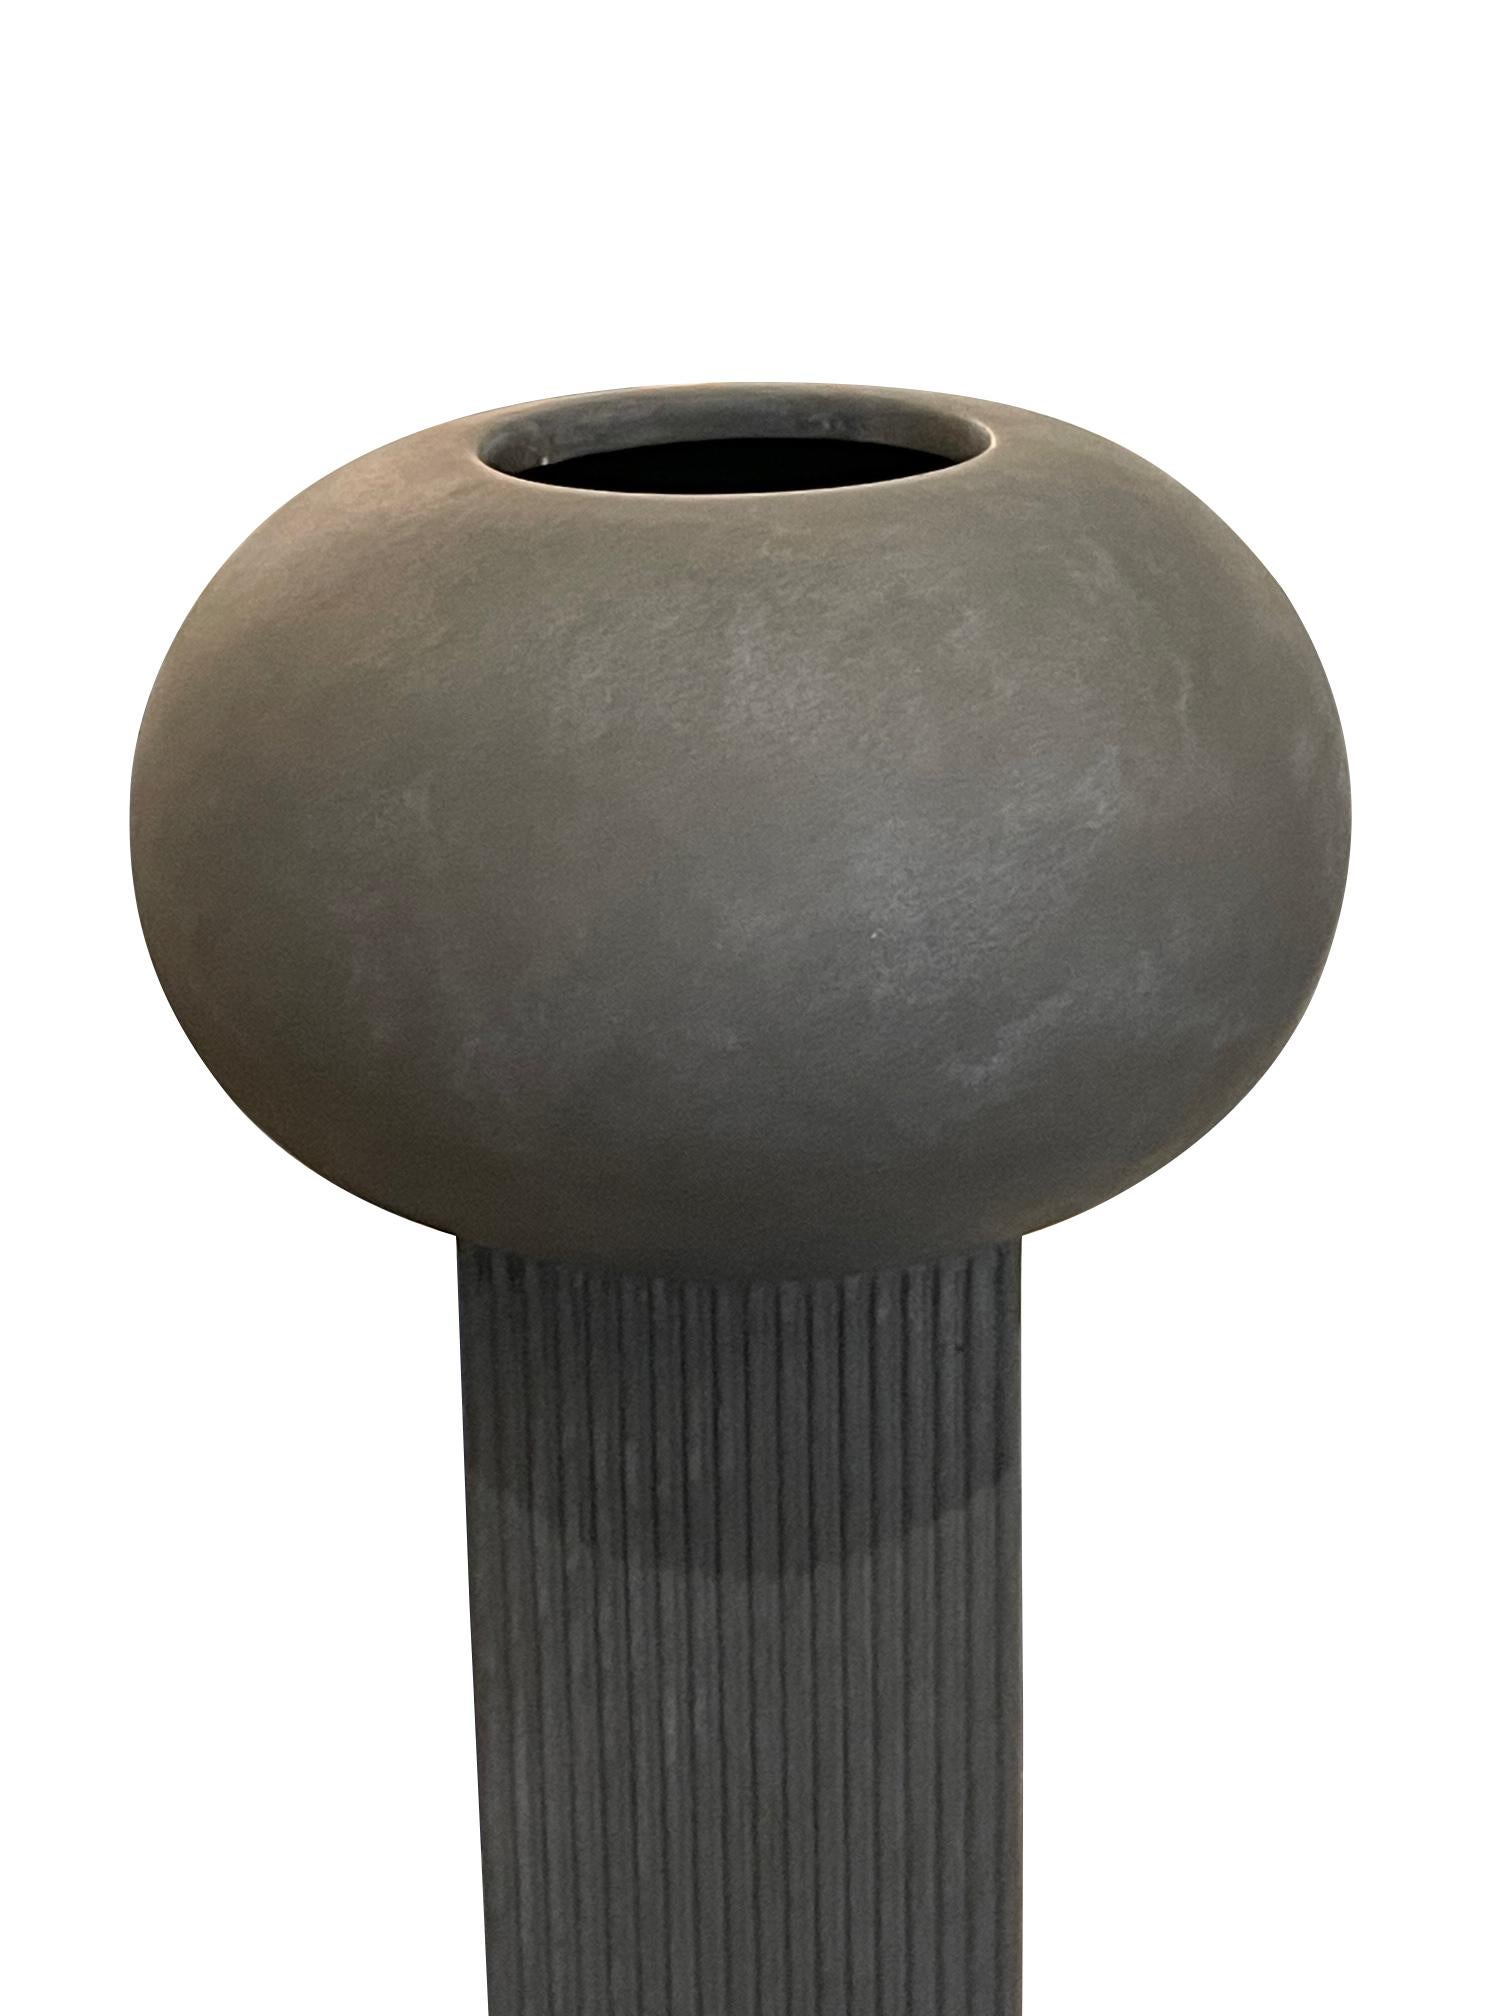 Große dänische Vase im dänischen Design, graue gerippte Säule mit Kugelplatte, zeitgenössisch (21. Jahrhundert und zeitgenössisch)